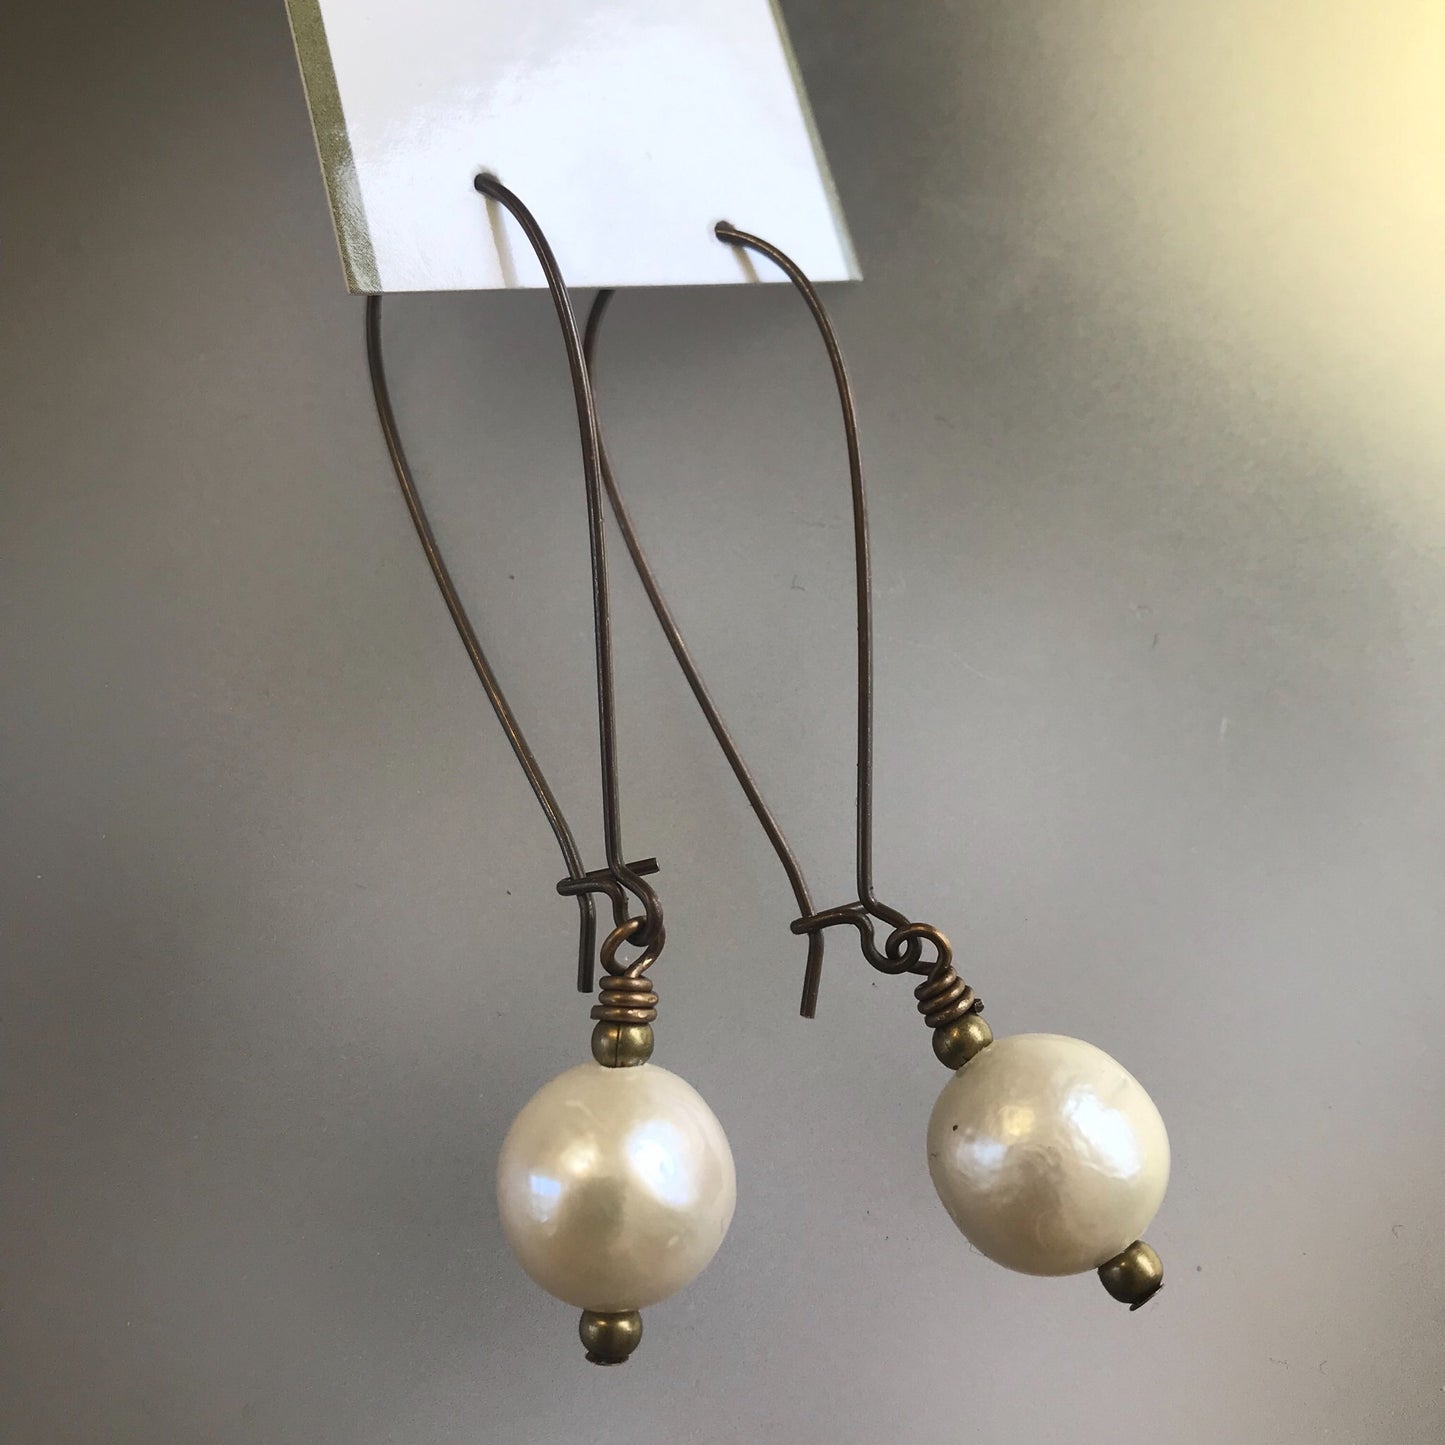 Single pearl earrings